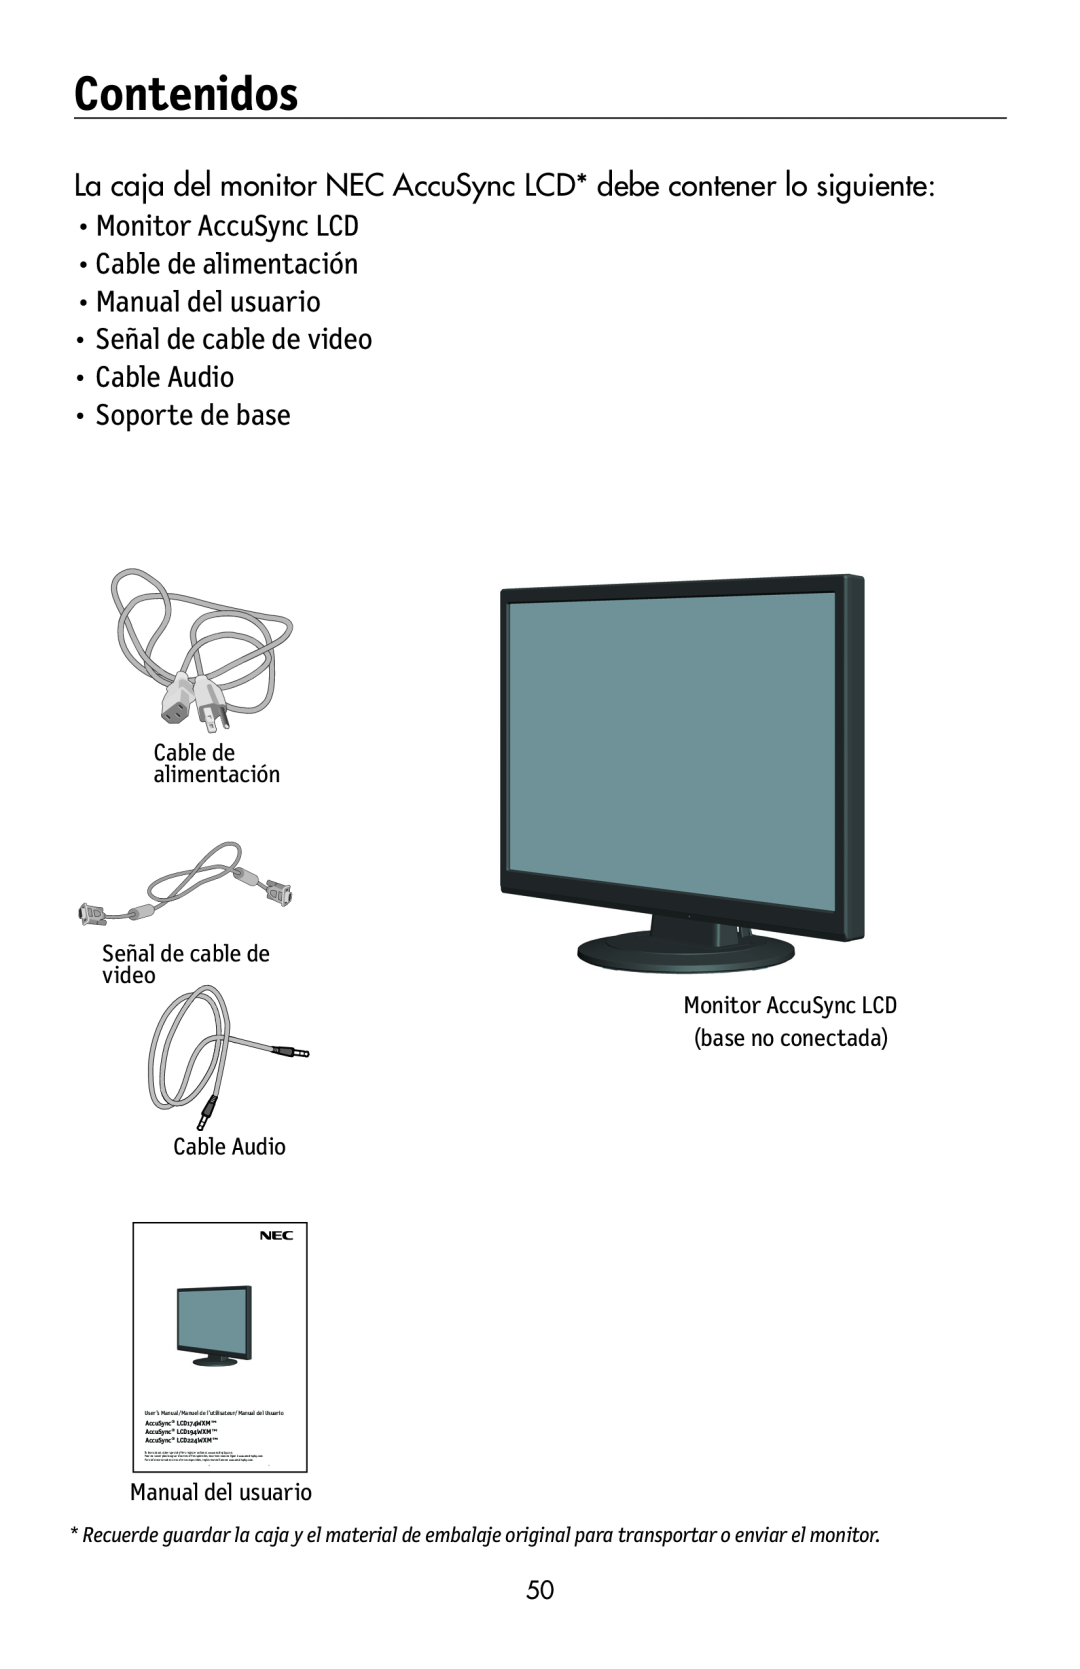 NEC LCD224WXM, LCD174WXM Contenidos, La caja del monitor NEC AccuSync LCD* debe contener lo siguiente, Cable Audio 